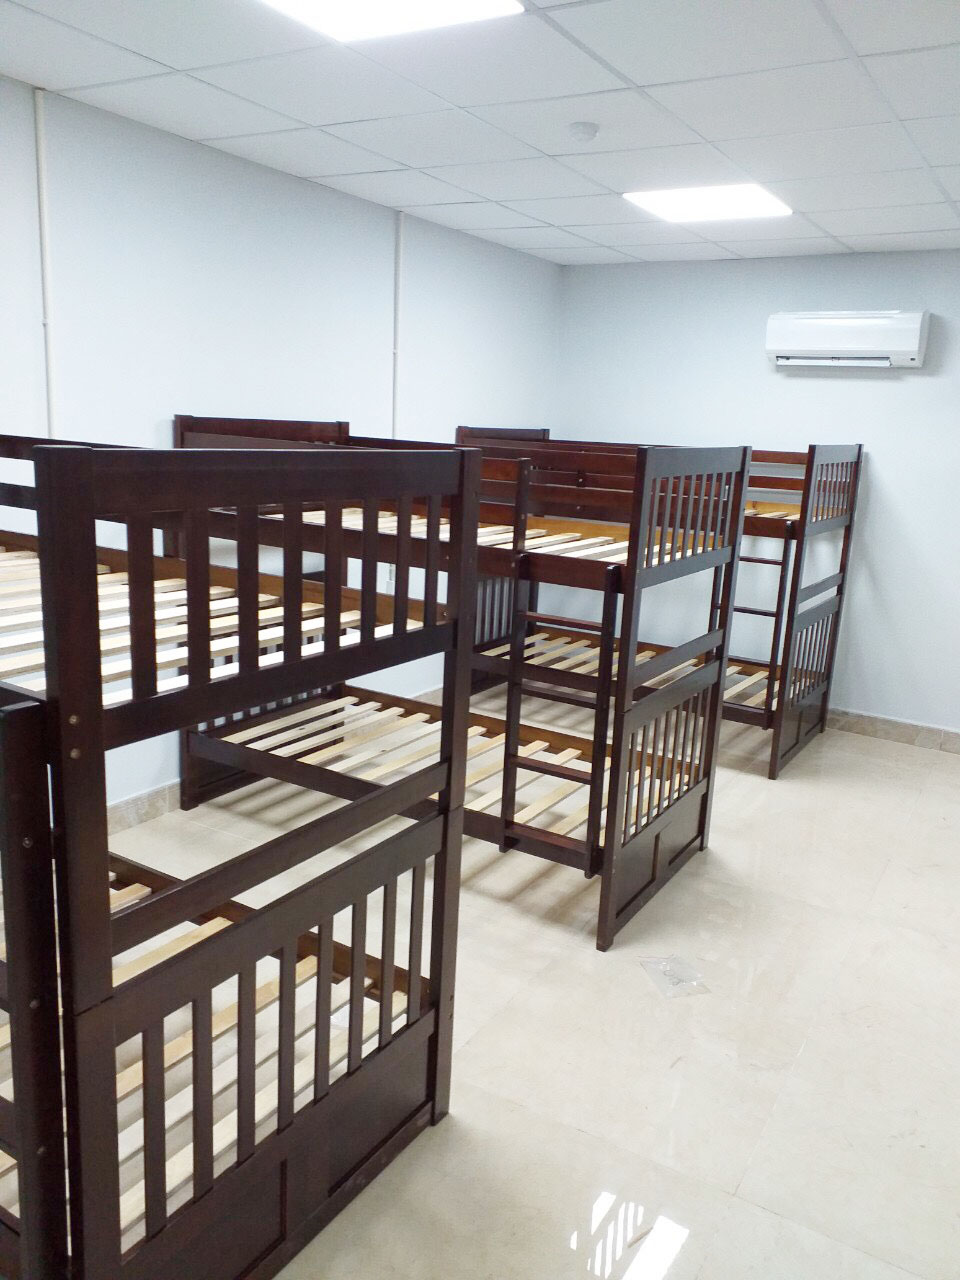 Dreamhome lắp đặt trực tiếp giường tầng tại nhà cho khách tại Hà Nội